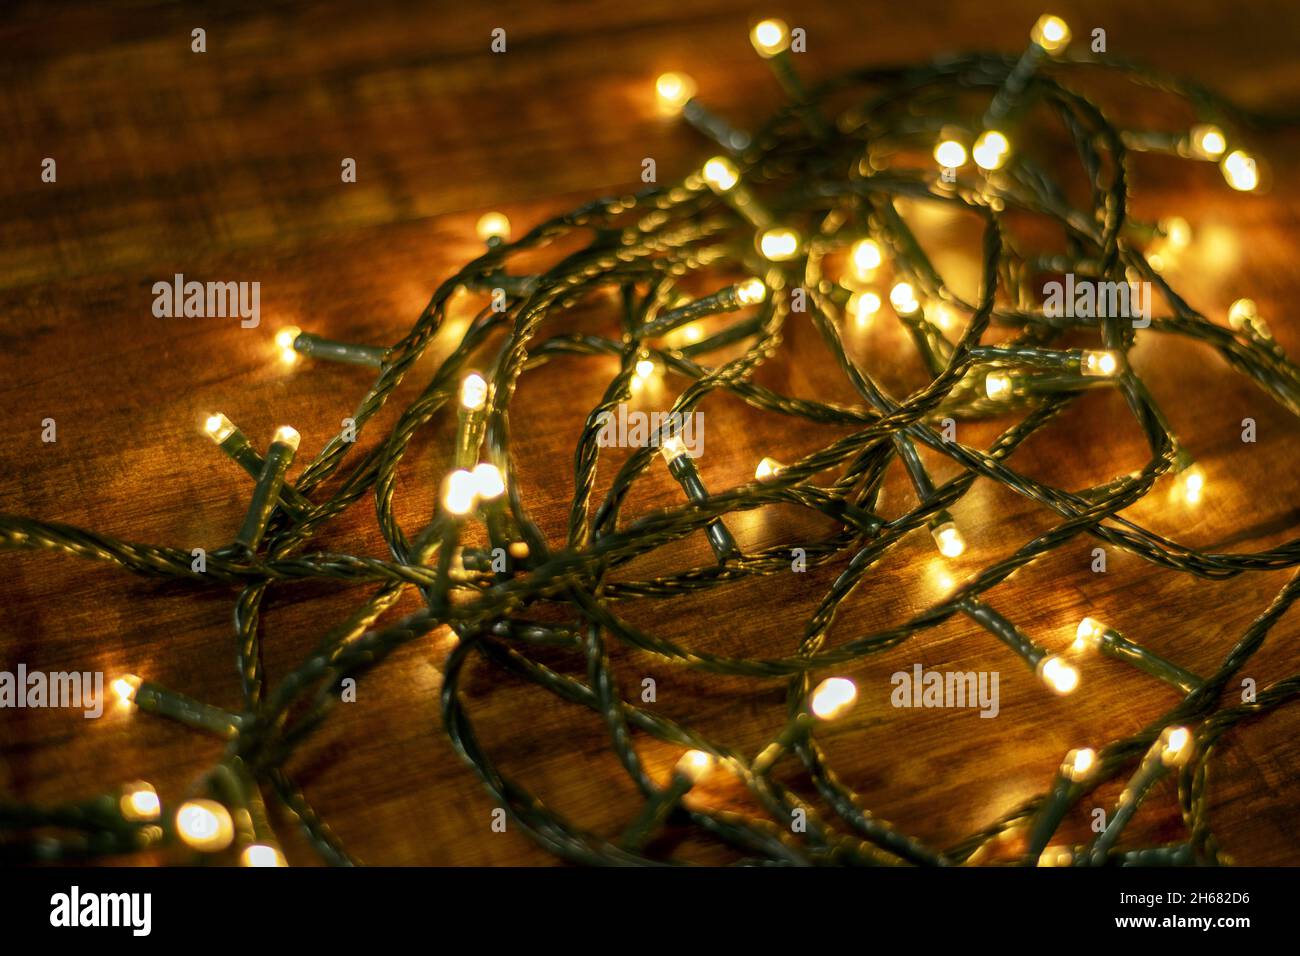 luces navideñas sobre fondo de madera Stock Photo